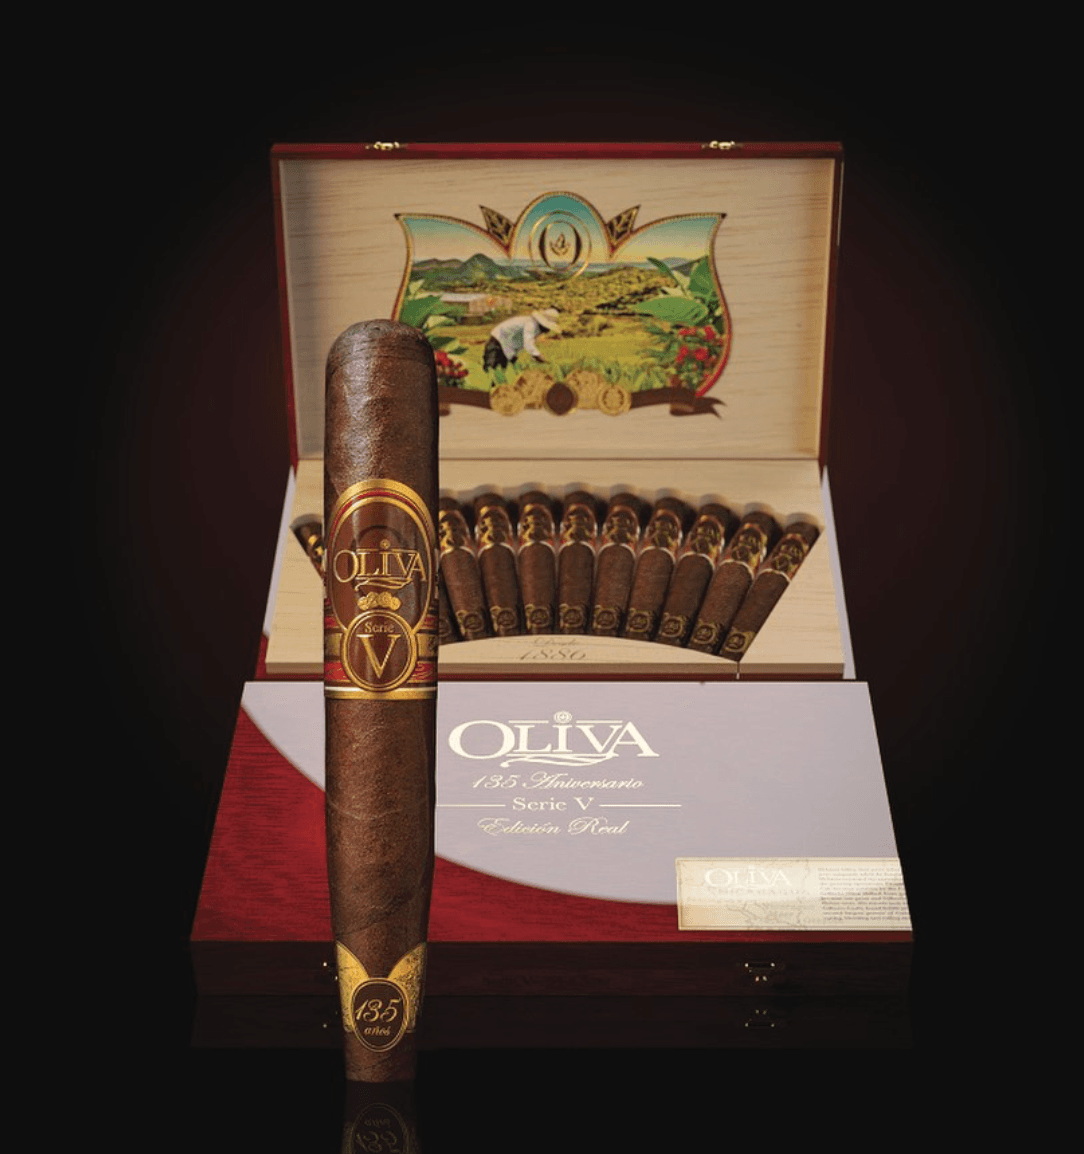 Oliva Serie V 135th Anniversary Perfecto - Box of 12